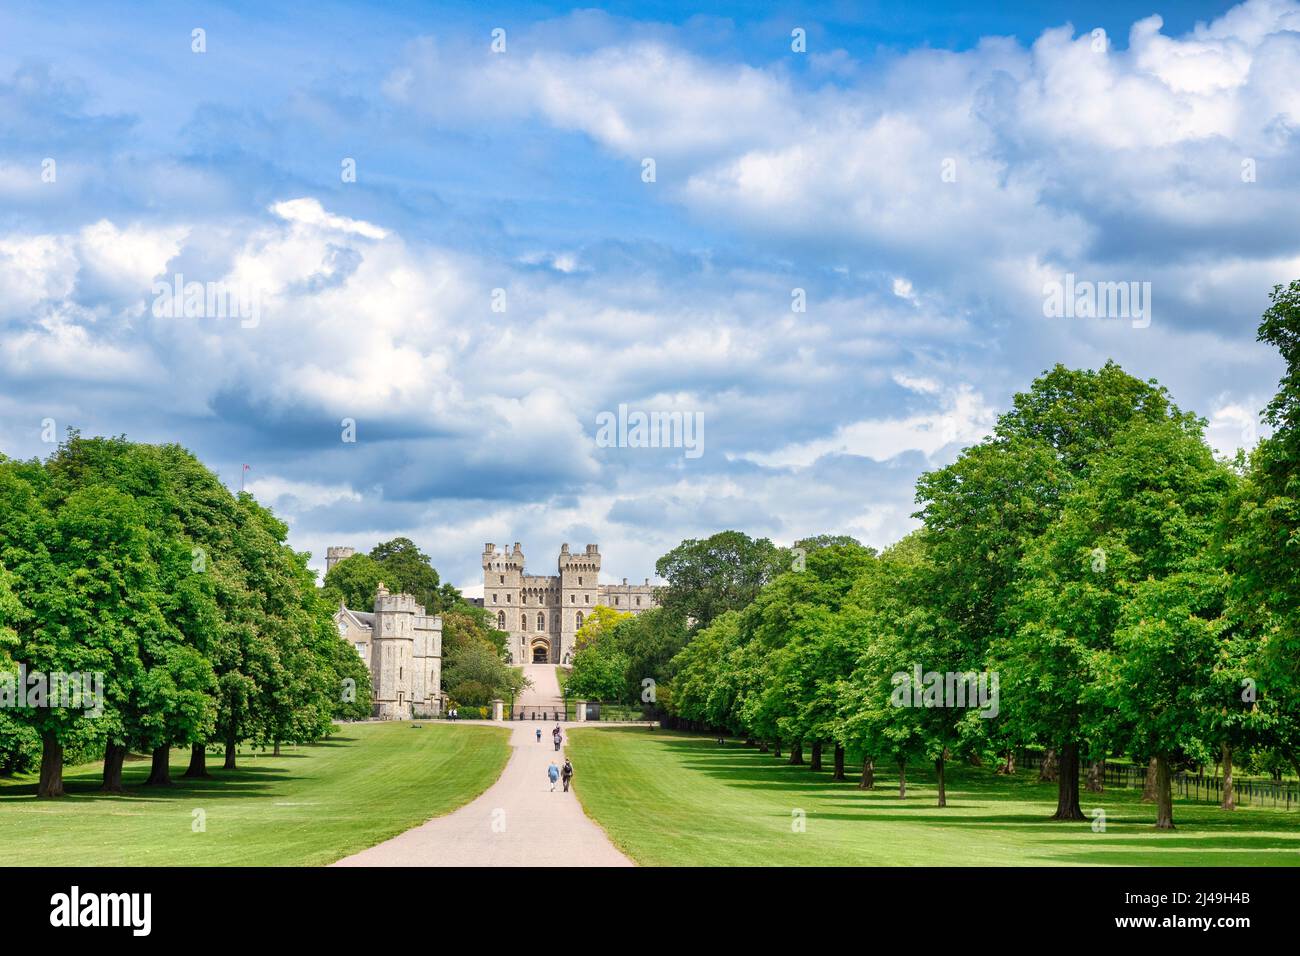 5 giugno 2019: Windsor, Berkshire, UK - Castello di Windsor, casa del monarca britannico, e il Long Walk, con il suo viale di alberi in foglia piena, la gente wa Foto Stock